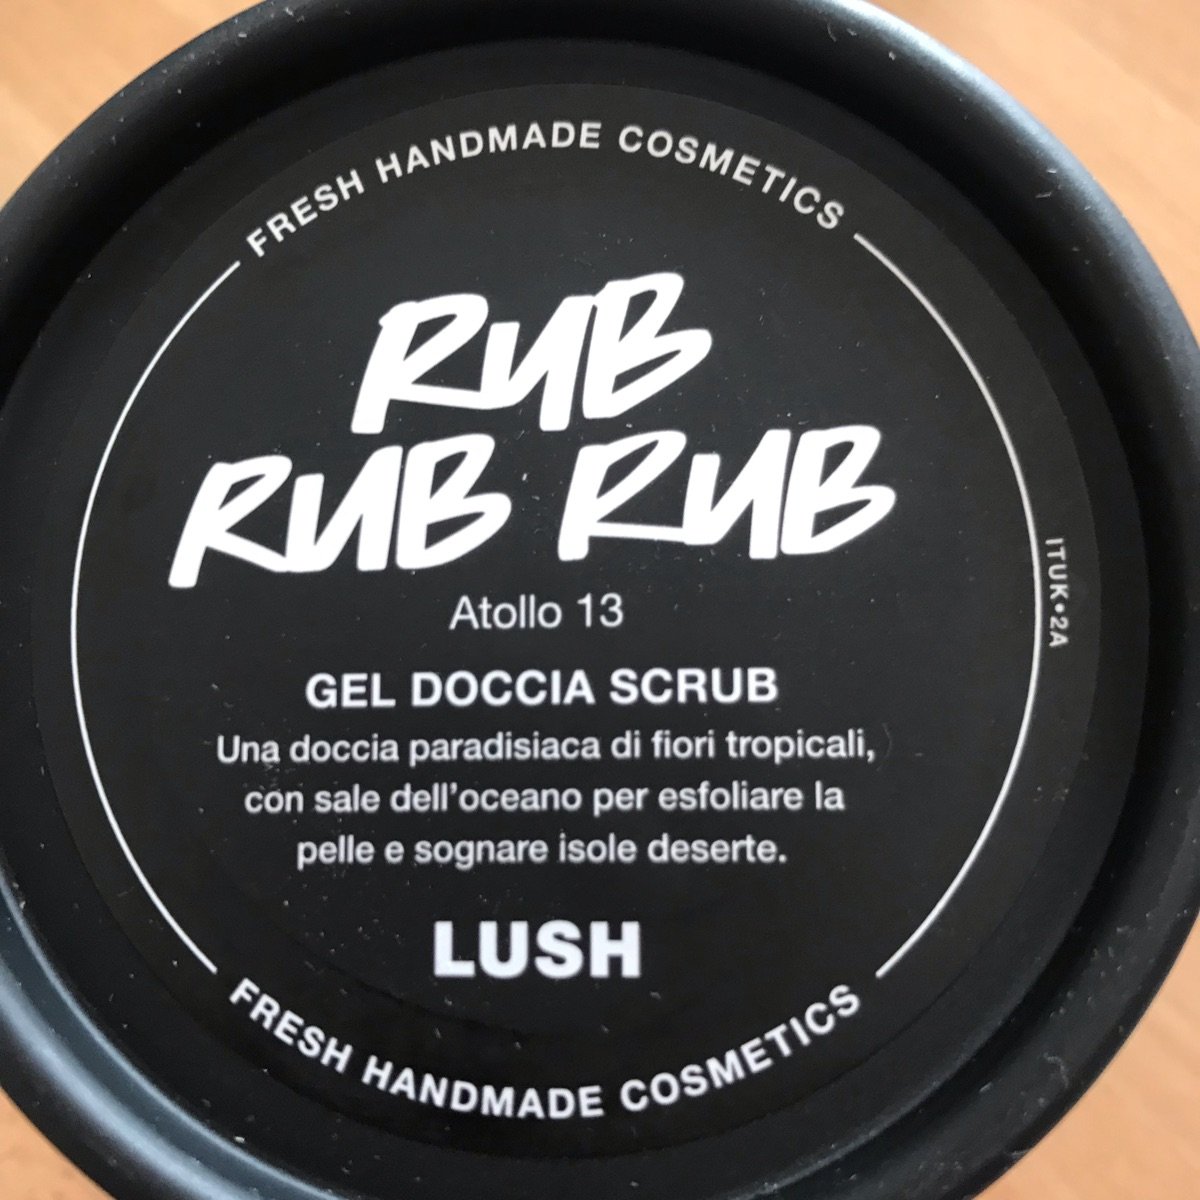 LUSH Fresh Handmade Cosmetics Rub Rub Rub Atollo 13 Reviews | abillion